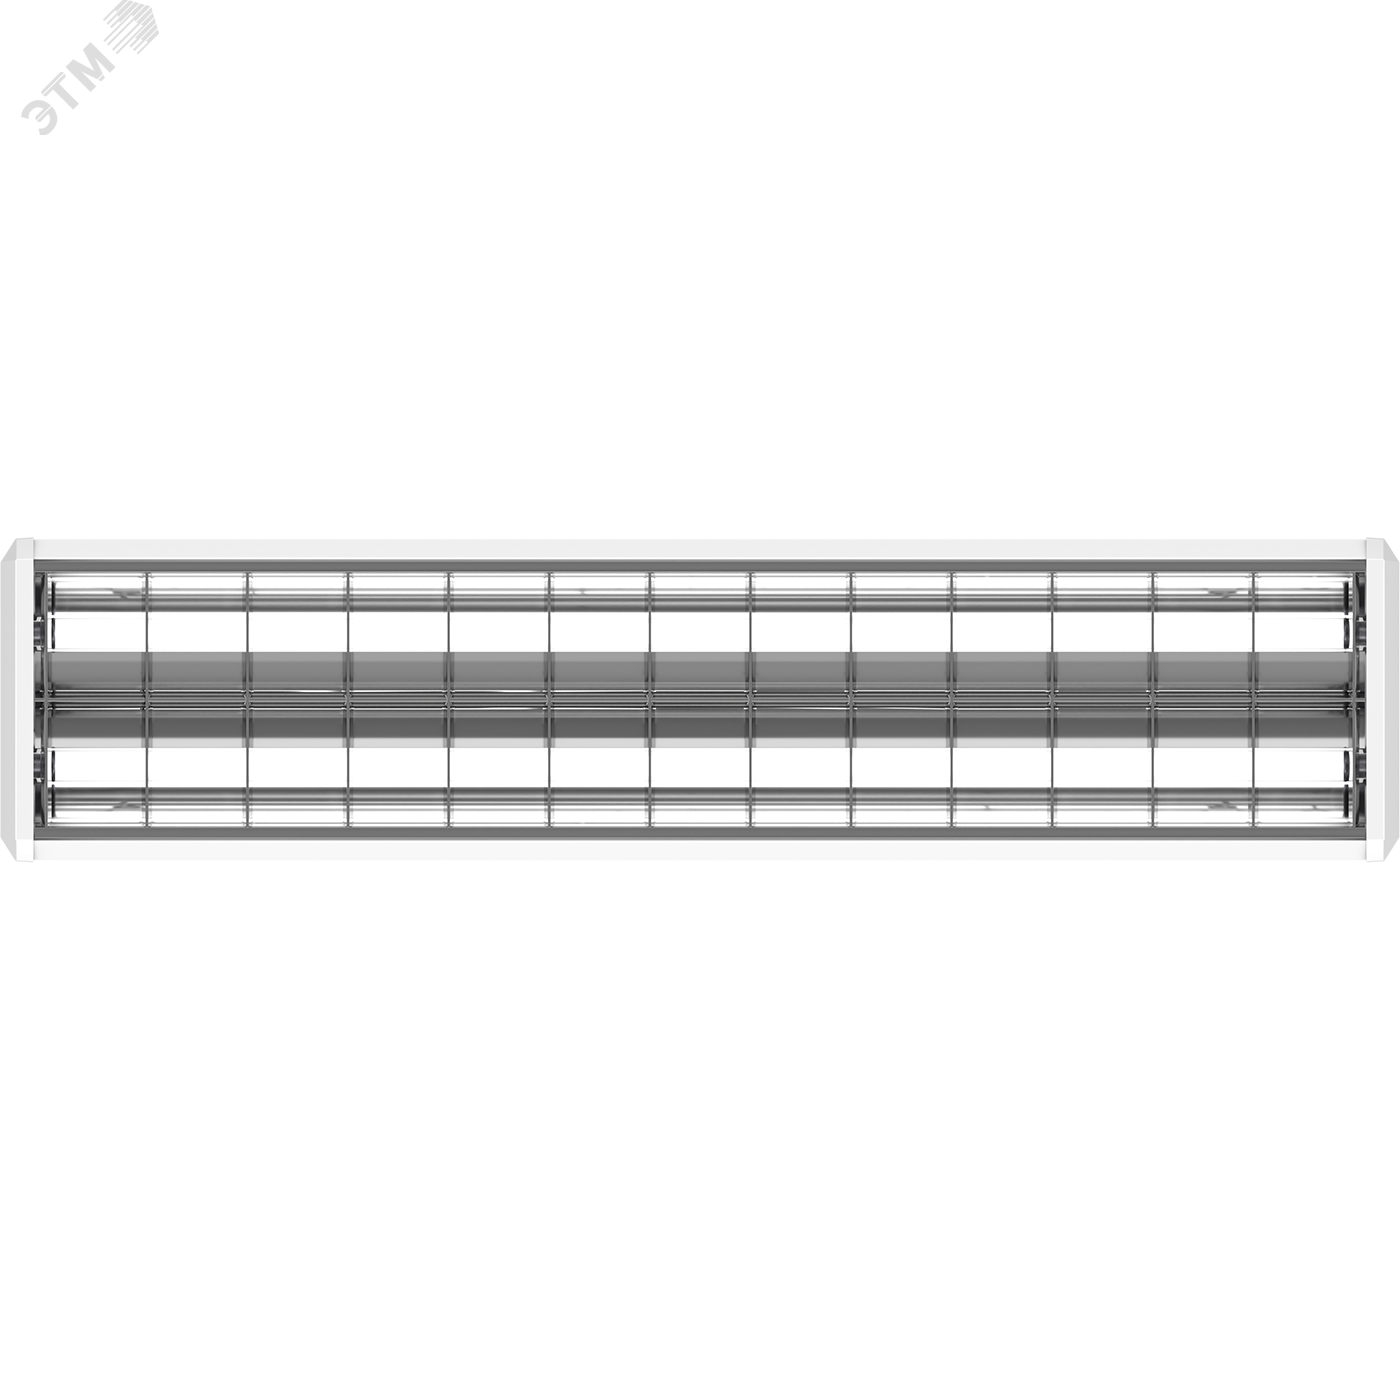 Светильник люминесцентный TOP 2x36 HF параболическая решетка ЭПРА без подвеса 1051000050 Световые Технологии - превью 6